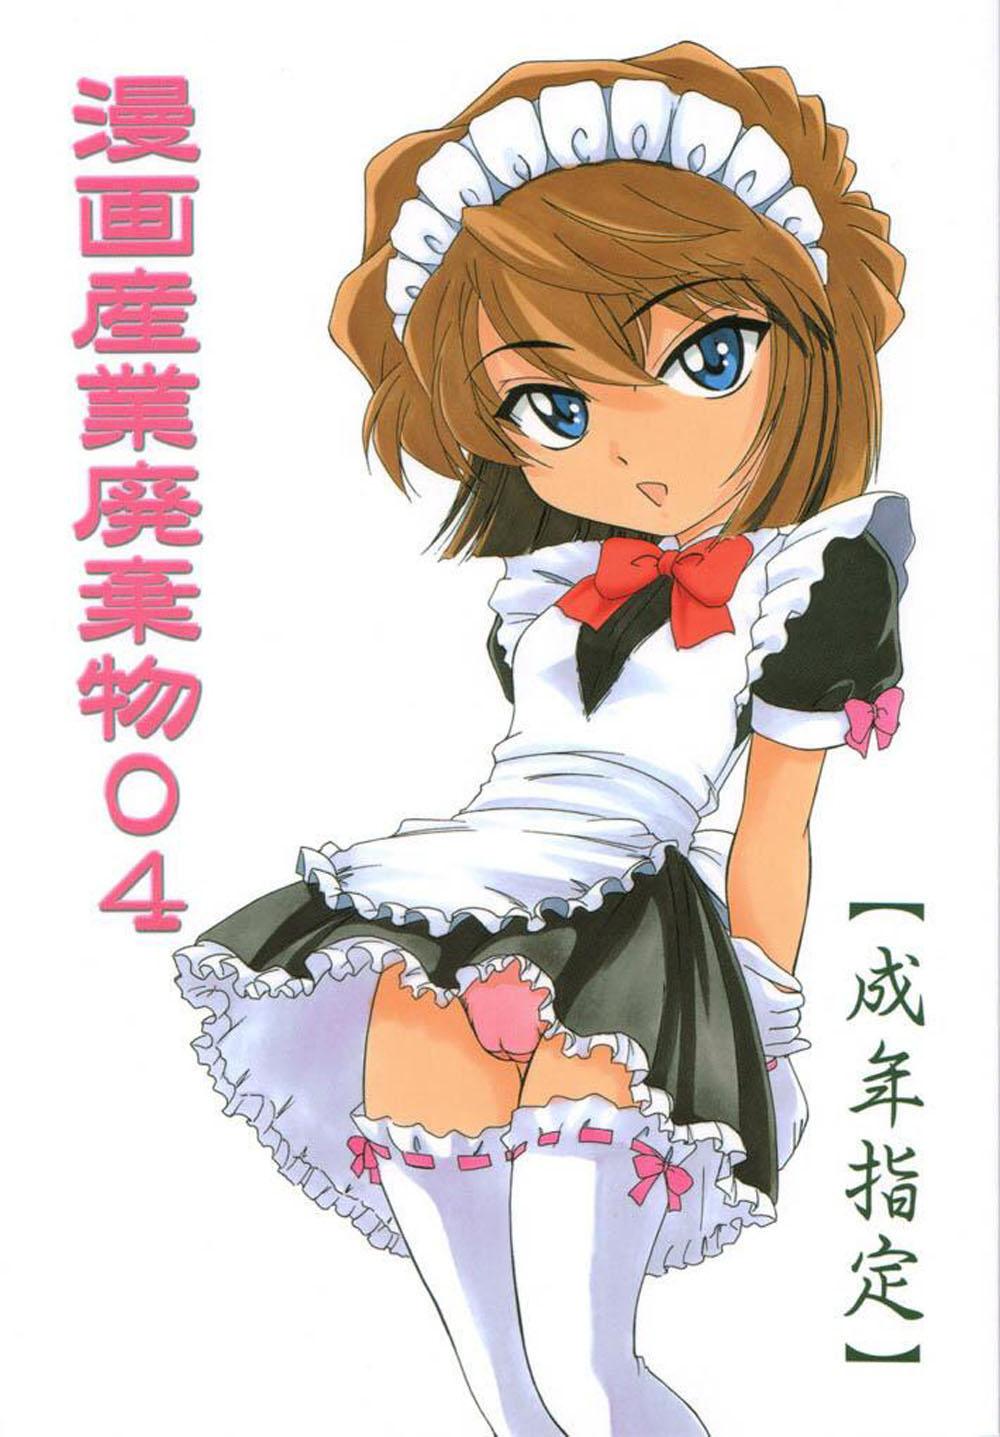 Escort Manga Sangyou Haikibutsu 04 - Detective conan Retro - Picture 1